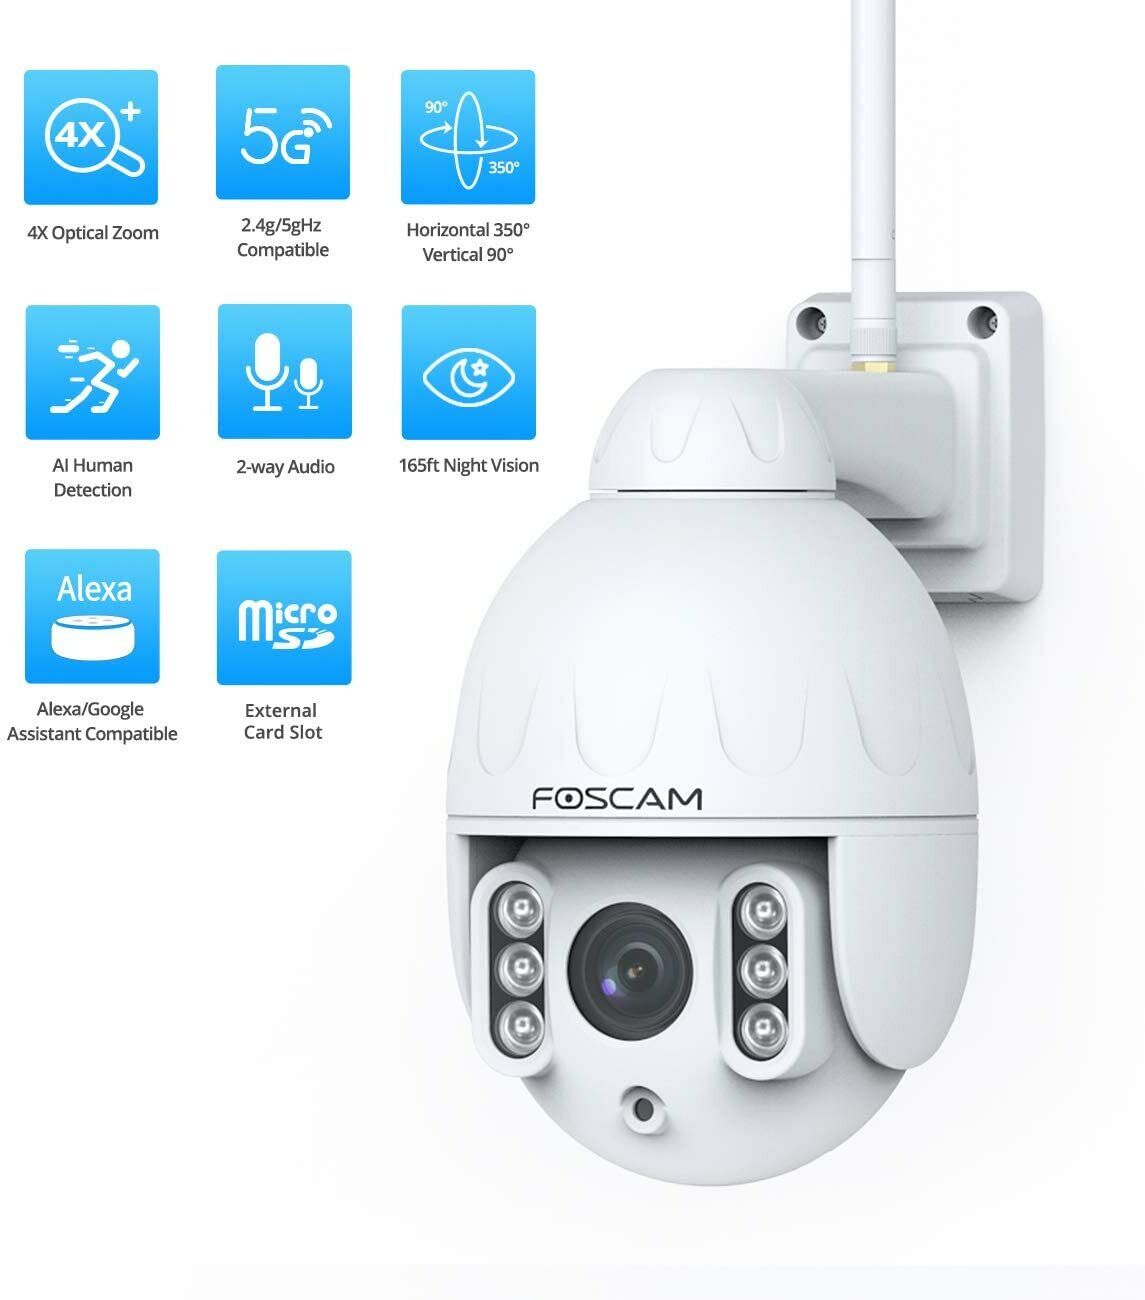 bodem calorie baard Foscam 4X Optical Zoom Pan Tilt HT2 1080p Outdoor 2.4g/5gHz WiFi PTZ IP  Camera 886897581378 | eBay